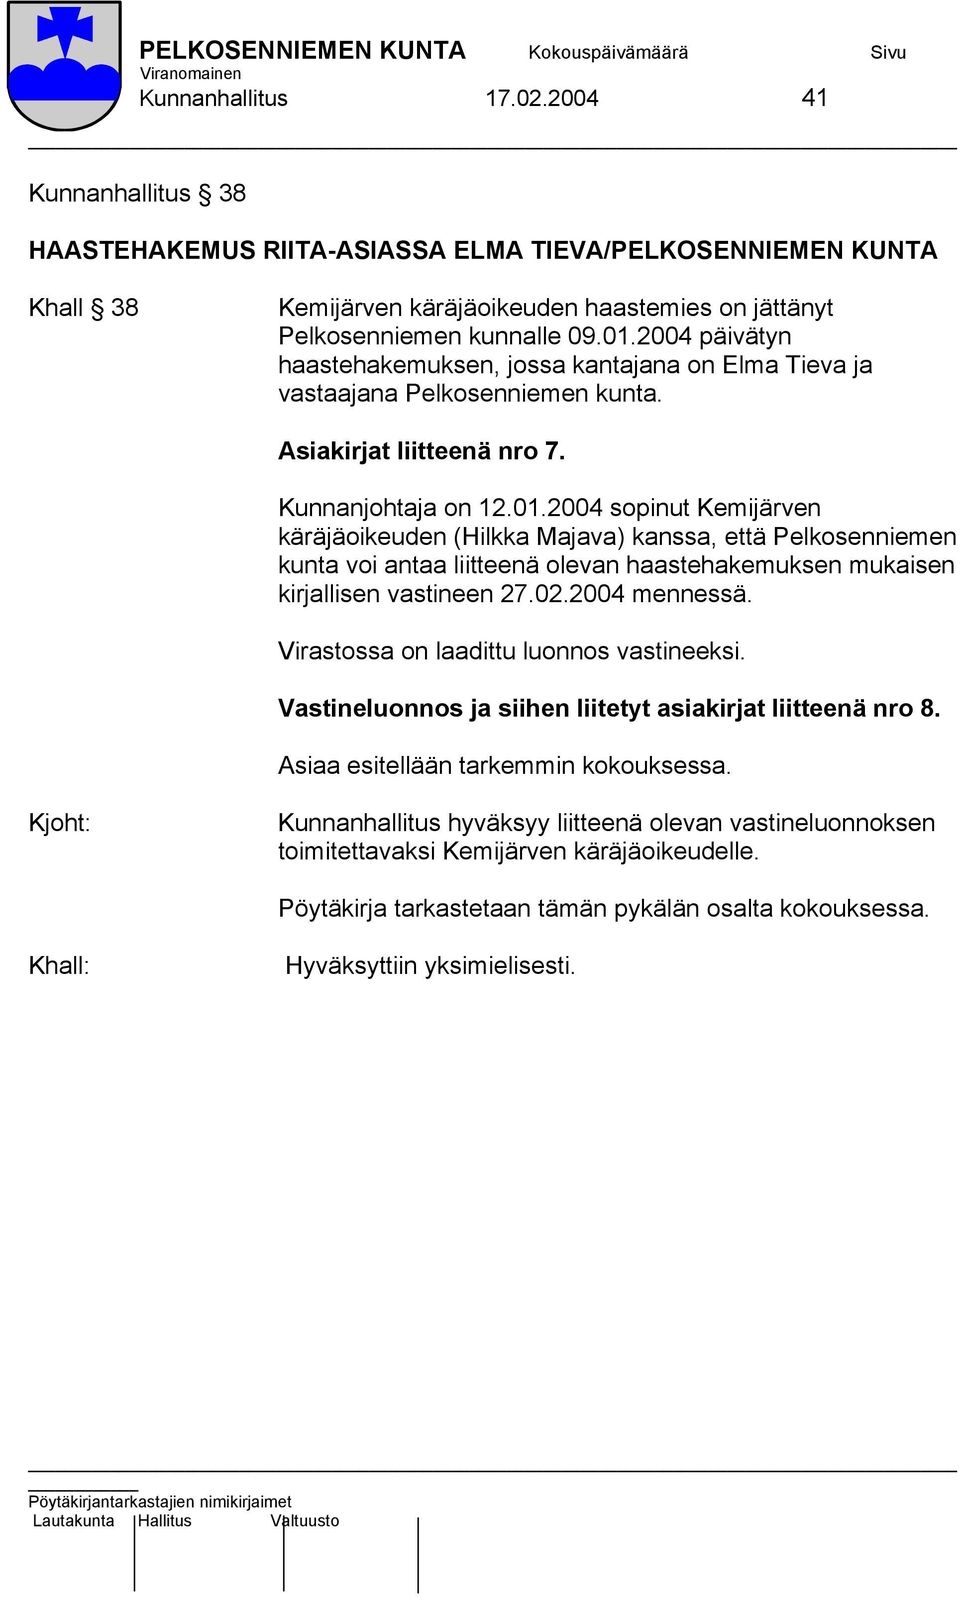 2004 sopinut Kemijärven käräjäoikeuden (Hilkka Majava) kanssa, että Pelkosenniemen kunta voi antaa liitteenä olevan haastehakemuksen mukaisen kirjallisen vastineen 27.02.2004 mennessä.